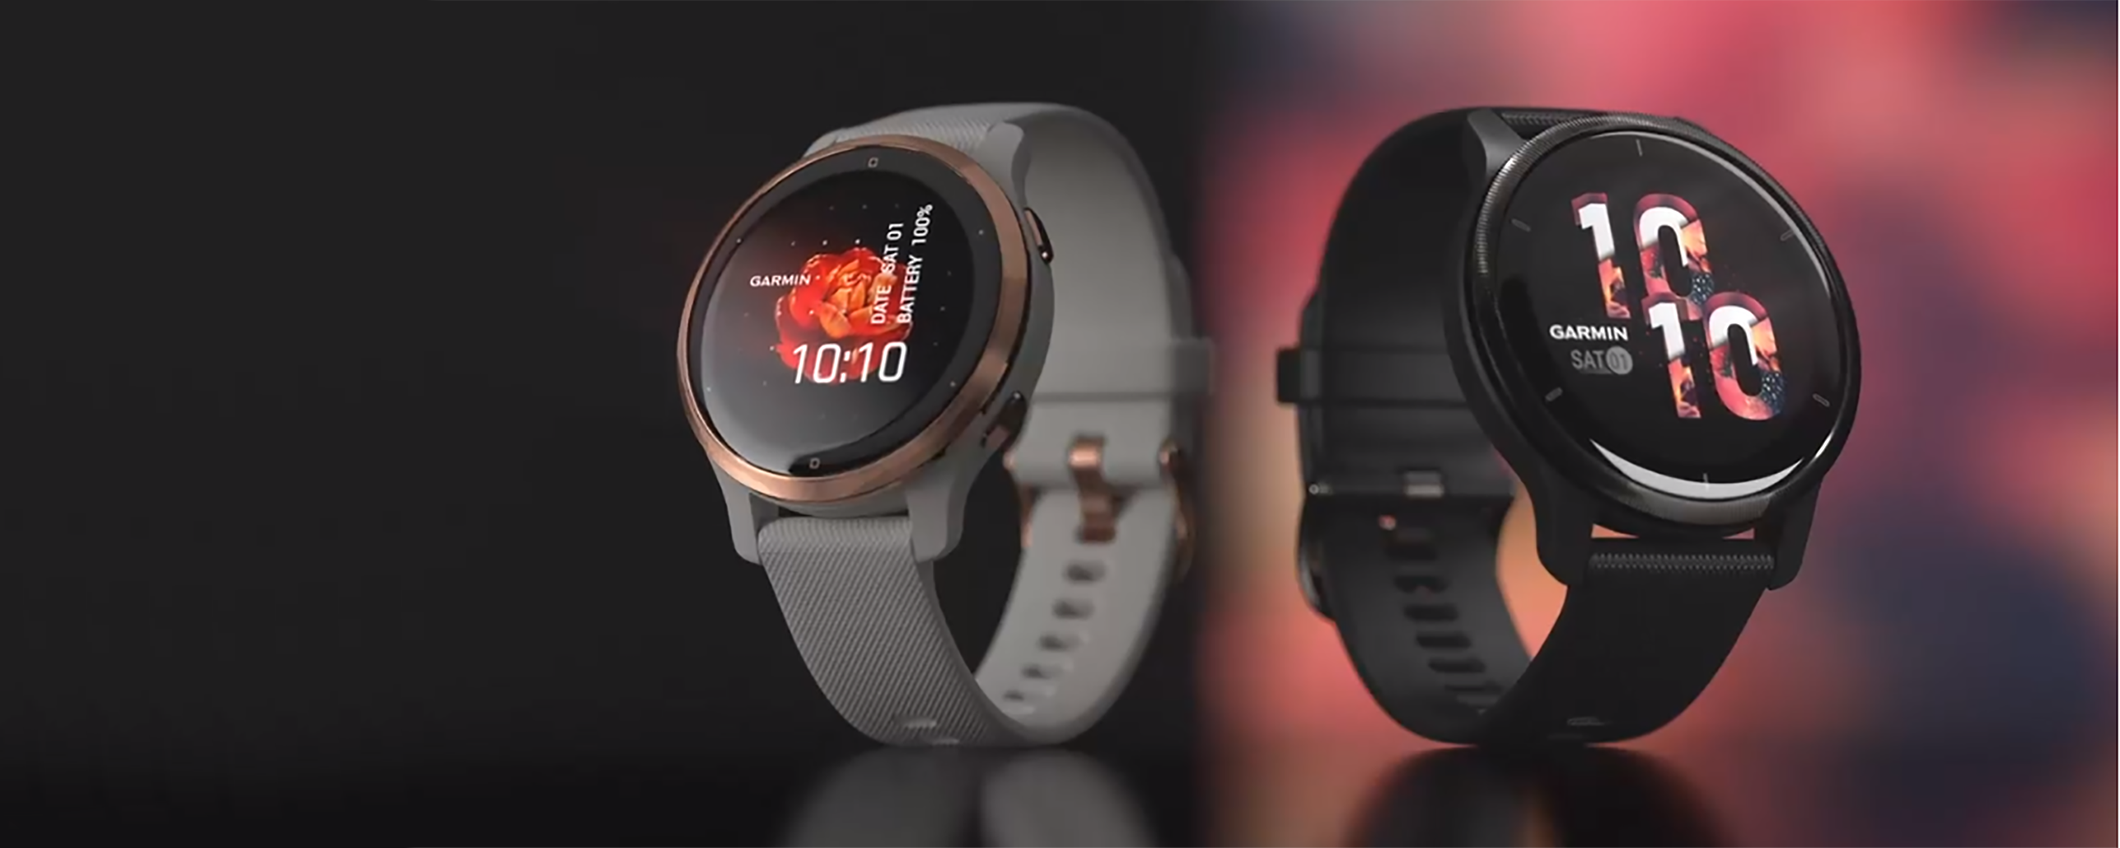 Solo 299,99€ per l'elegante smartwatch Garmin Venu 2S che trasformerà il tuo stile di vita